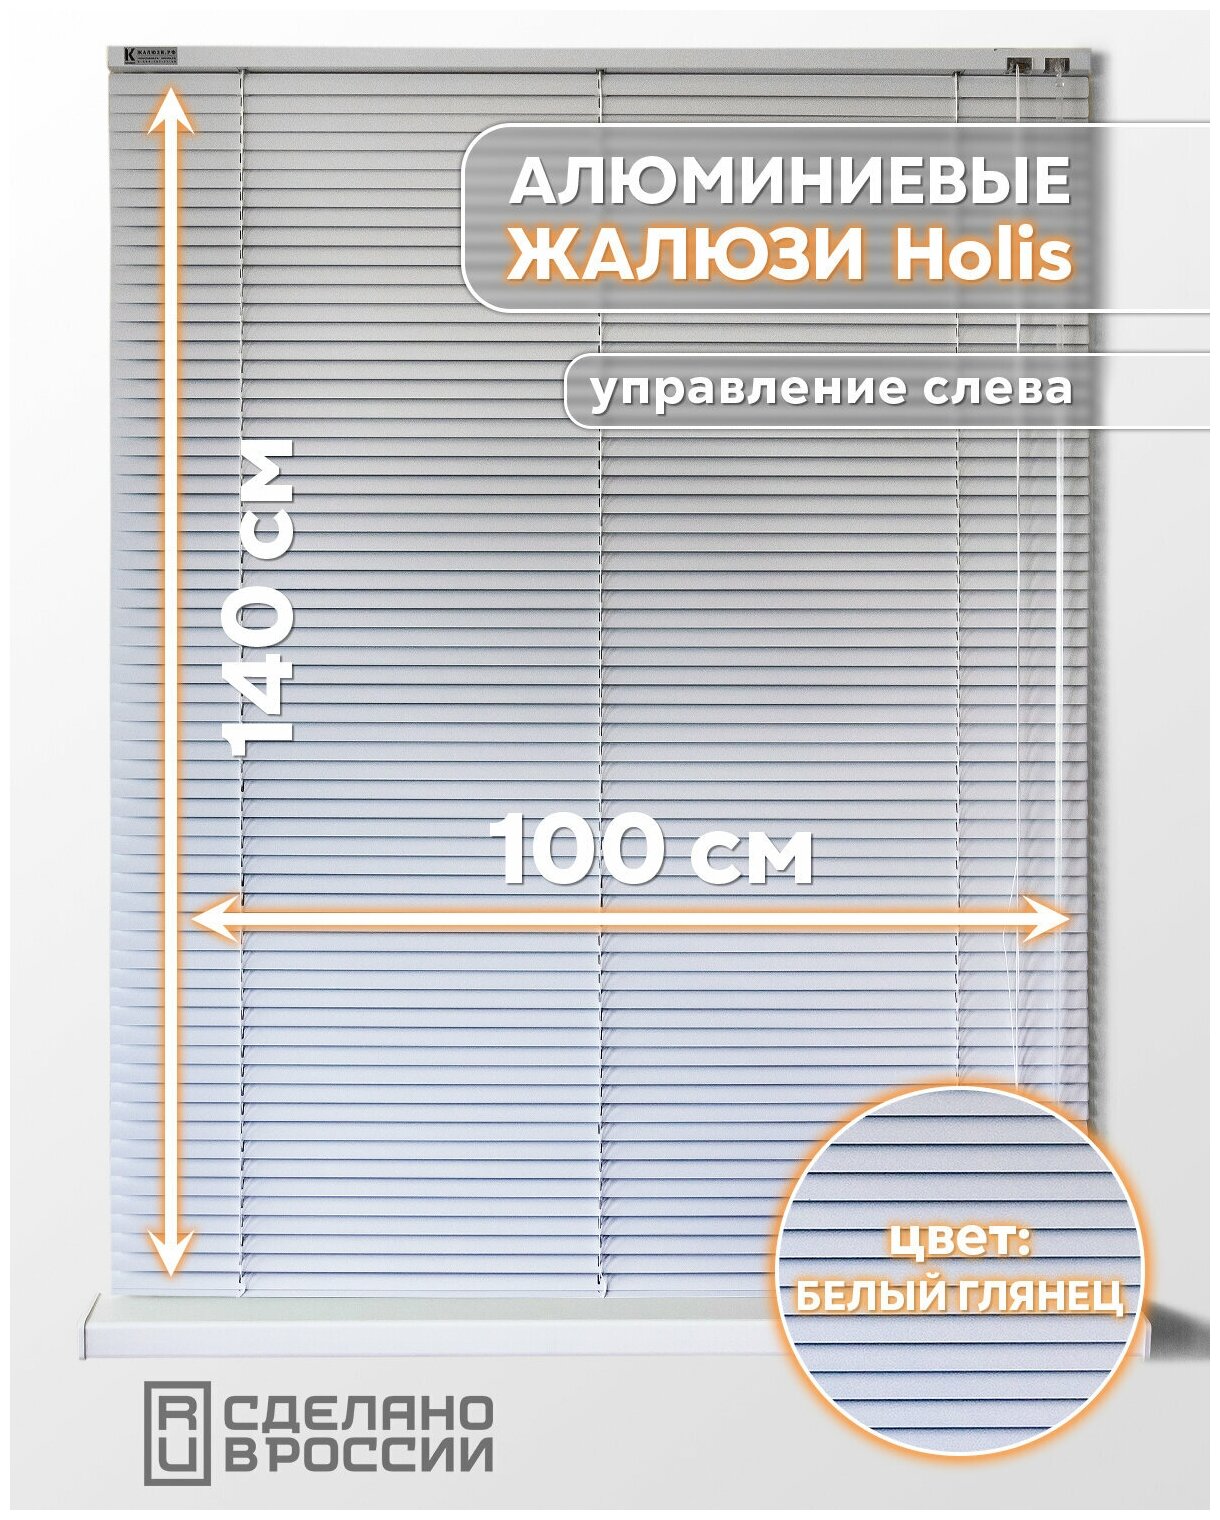 Алюминиевые горизонтальные жалюзи на окна с системой "Холис", белый глянец, 1000мм x 1400мм, управление слева